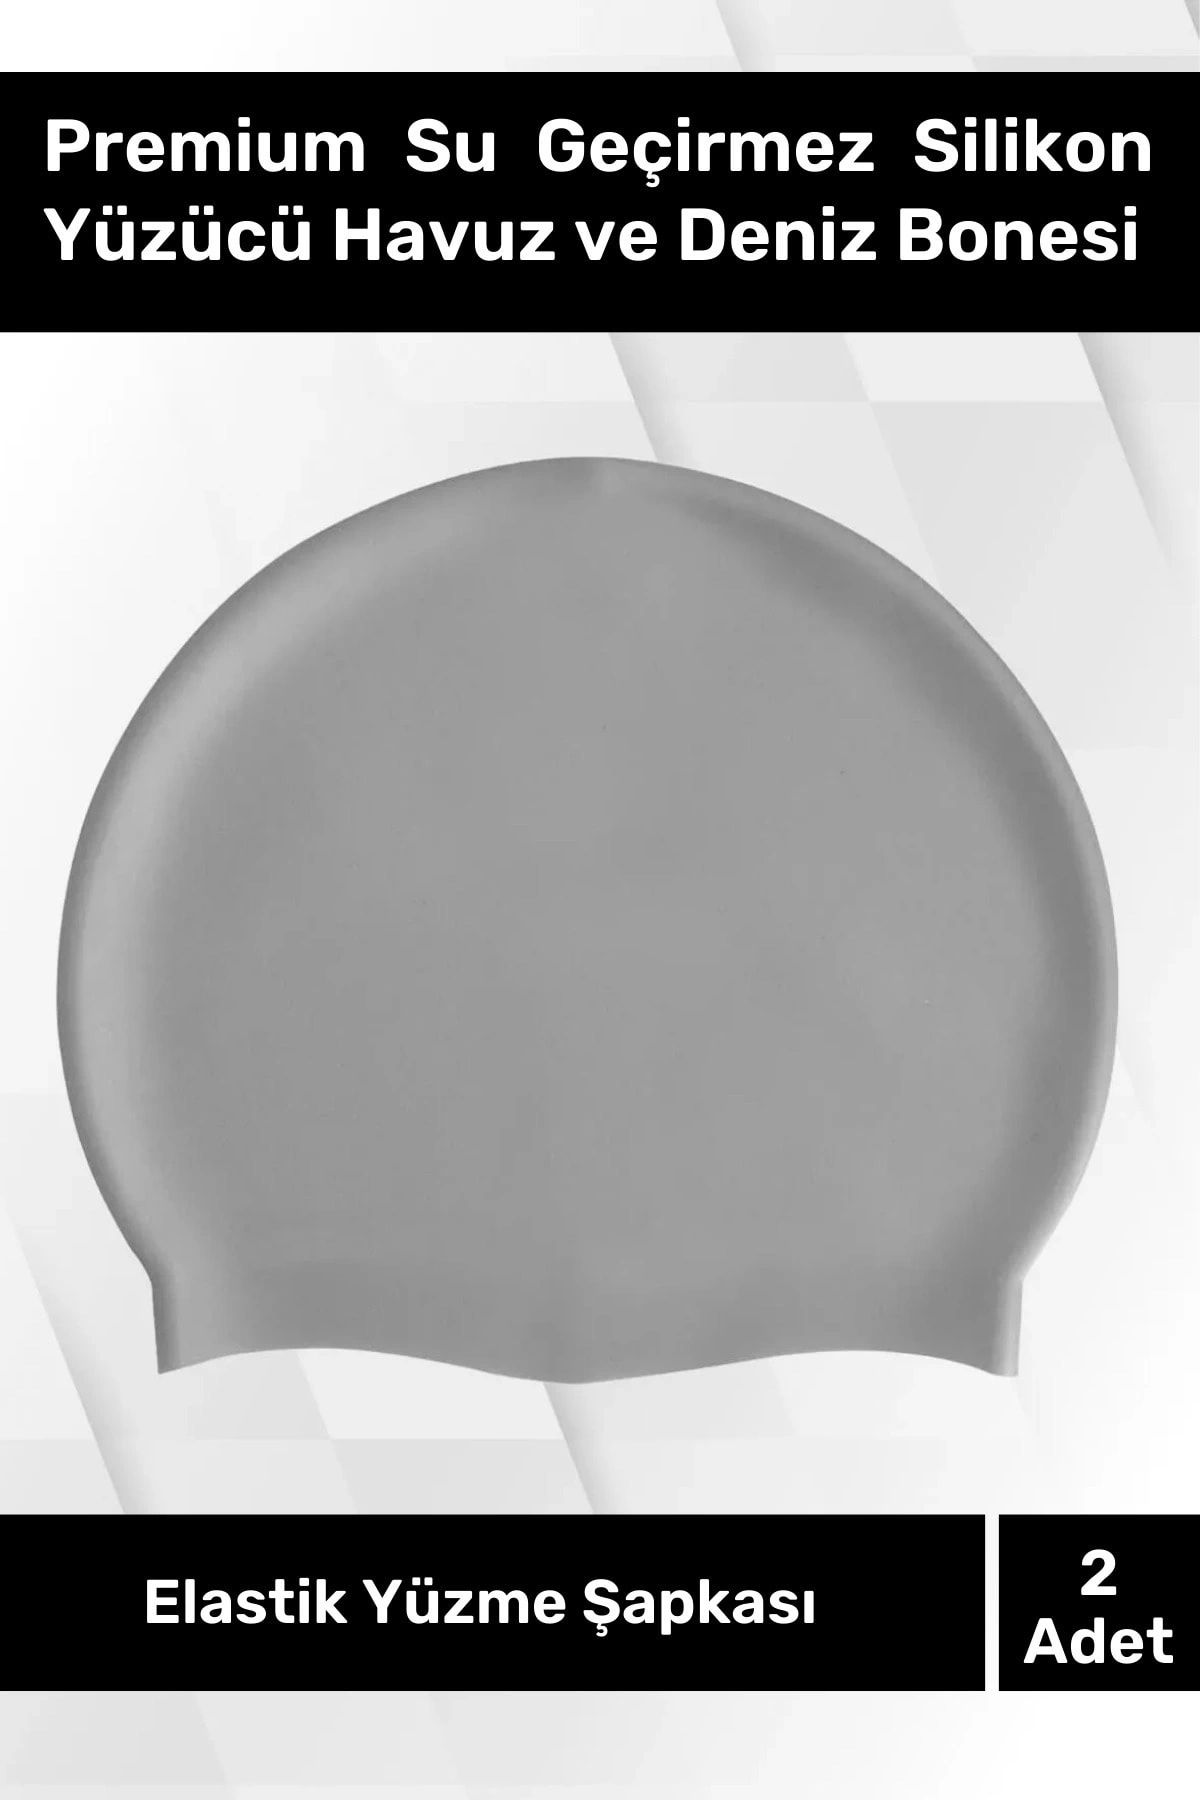 Genel Markalar Premium Su Geçirmez Silikon Yüzücü Havuz Ve Deniz Bonesi Elastik Yüzme Şapkası 2'li Set